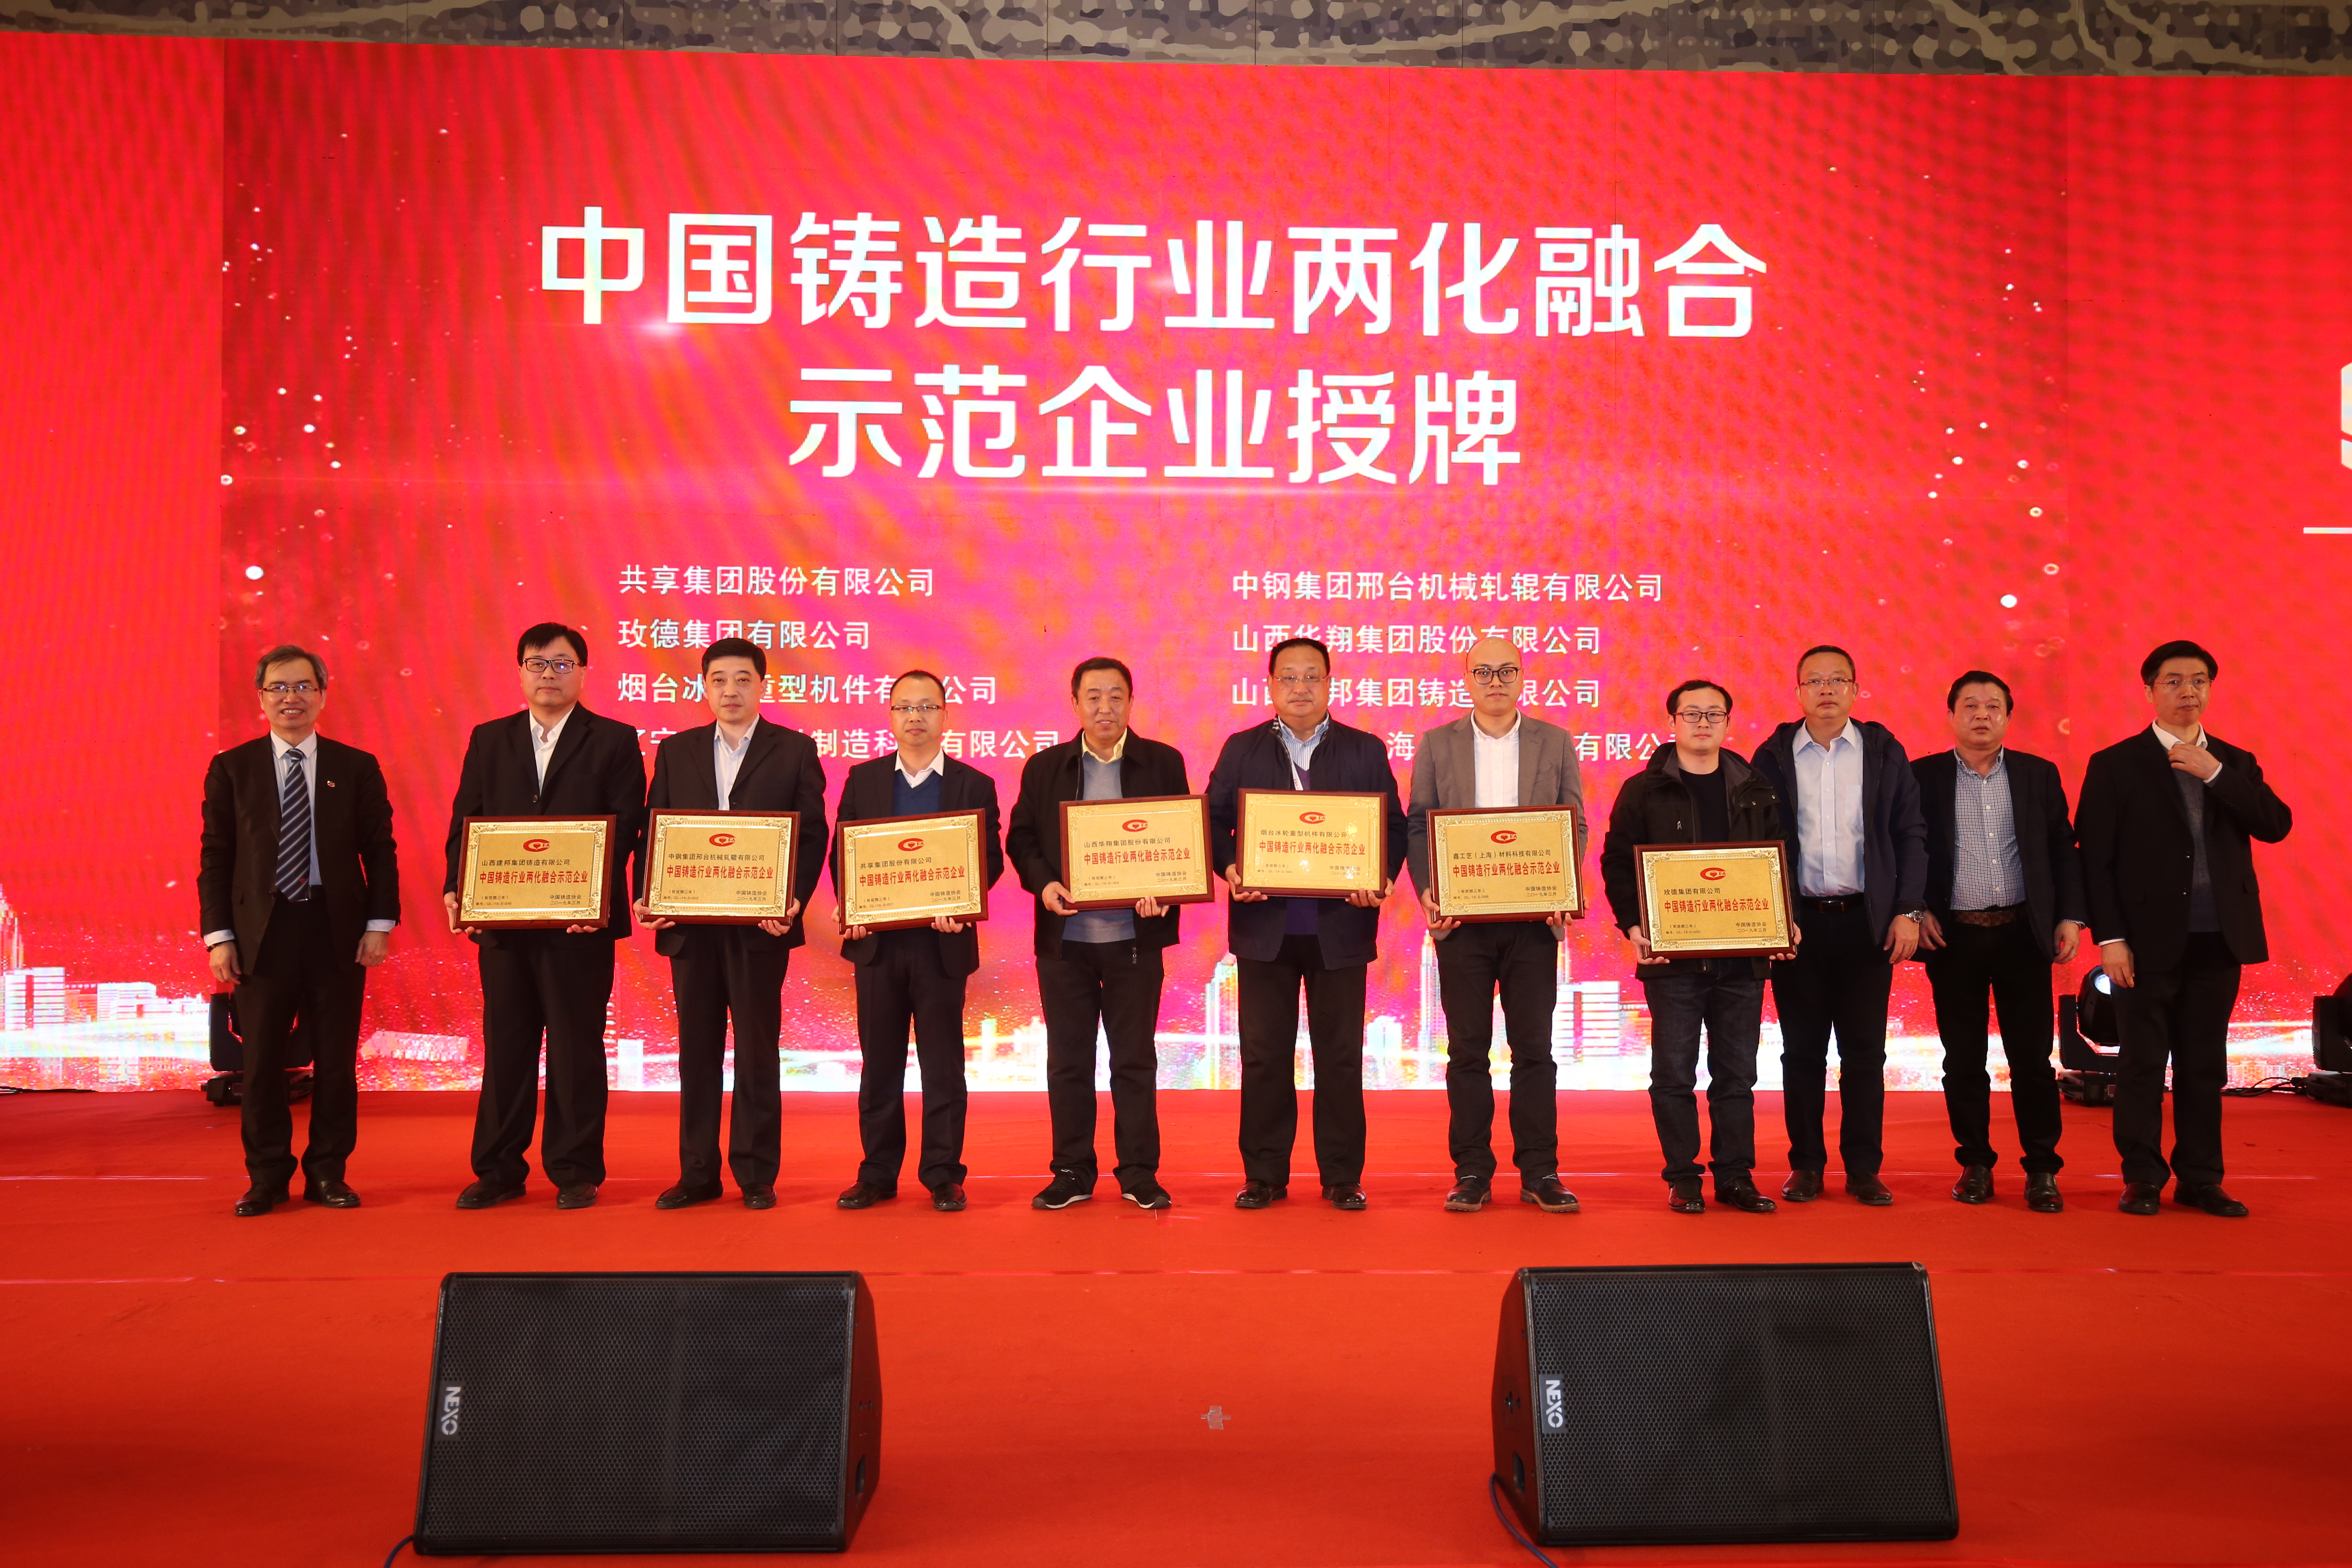 熱烈祝賀我司在第十五屆中國鑄造協會年會上榮獲“中國鑄造行業兩化融合示范企業”